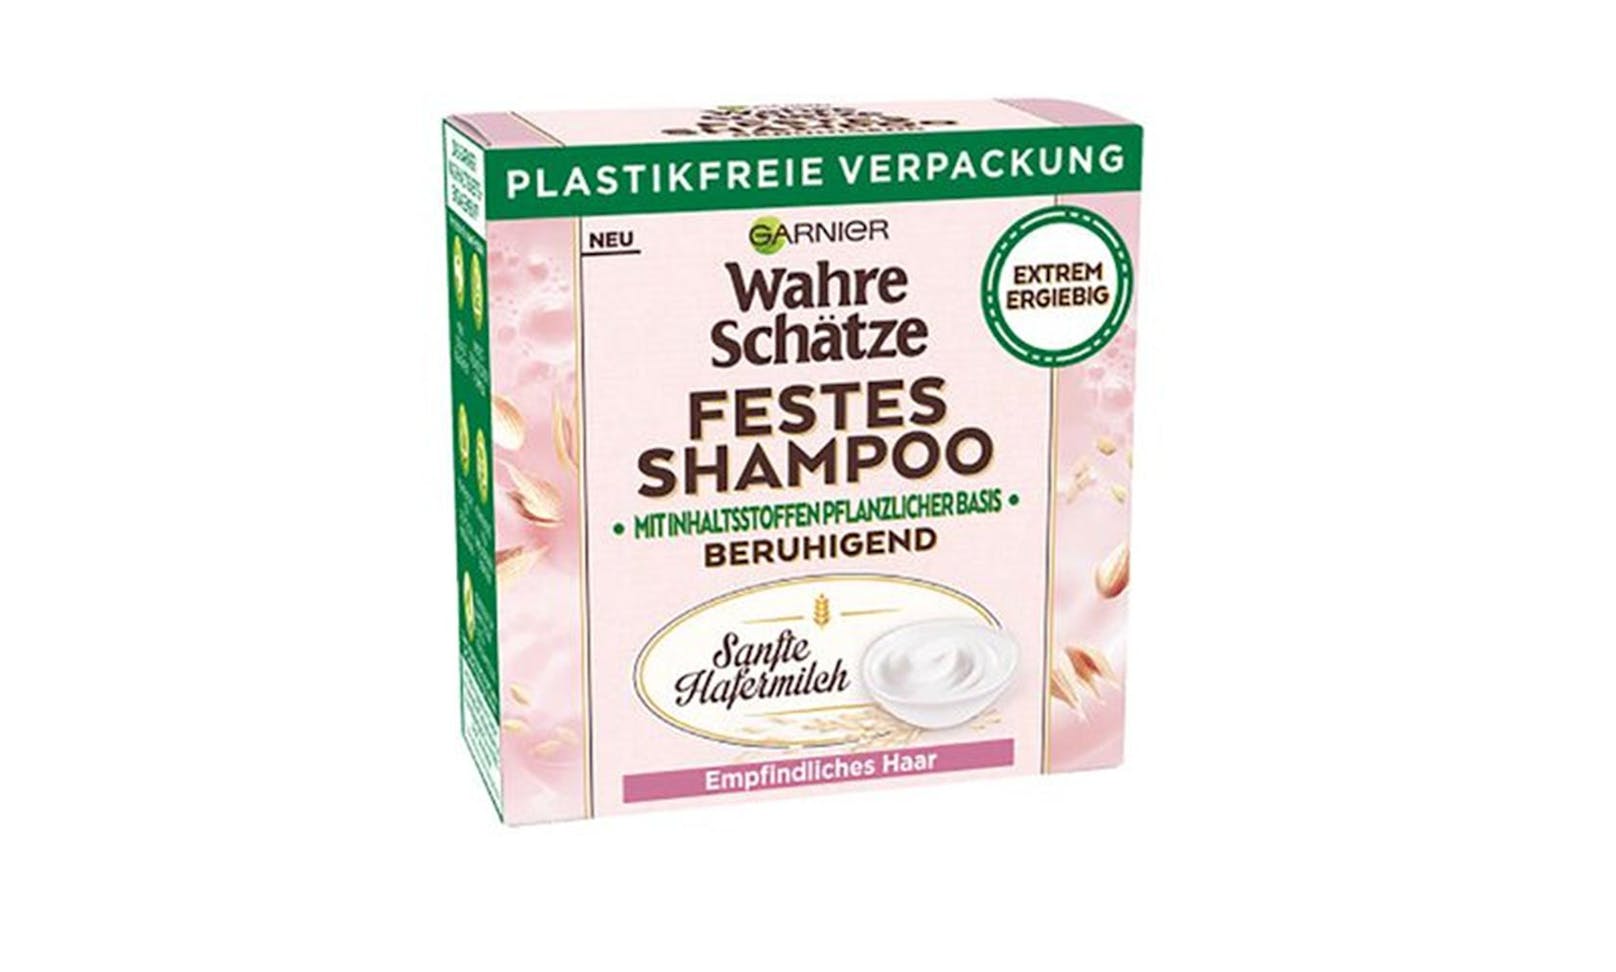 Selbst die umstrittene Marke "Garnier" wirbt nun mit plastikfreier Verpackung. Festes Shampoo um € 5,29.